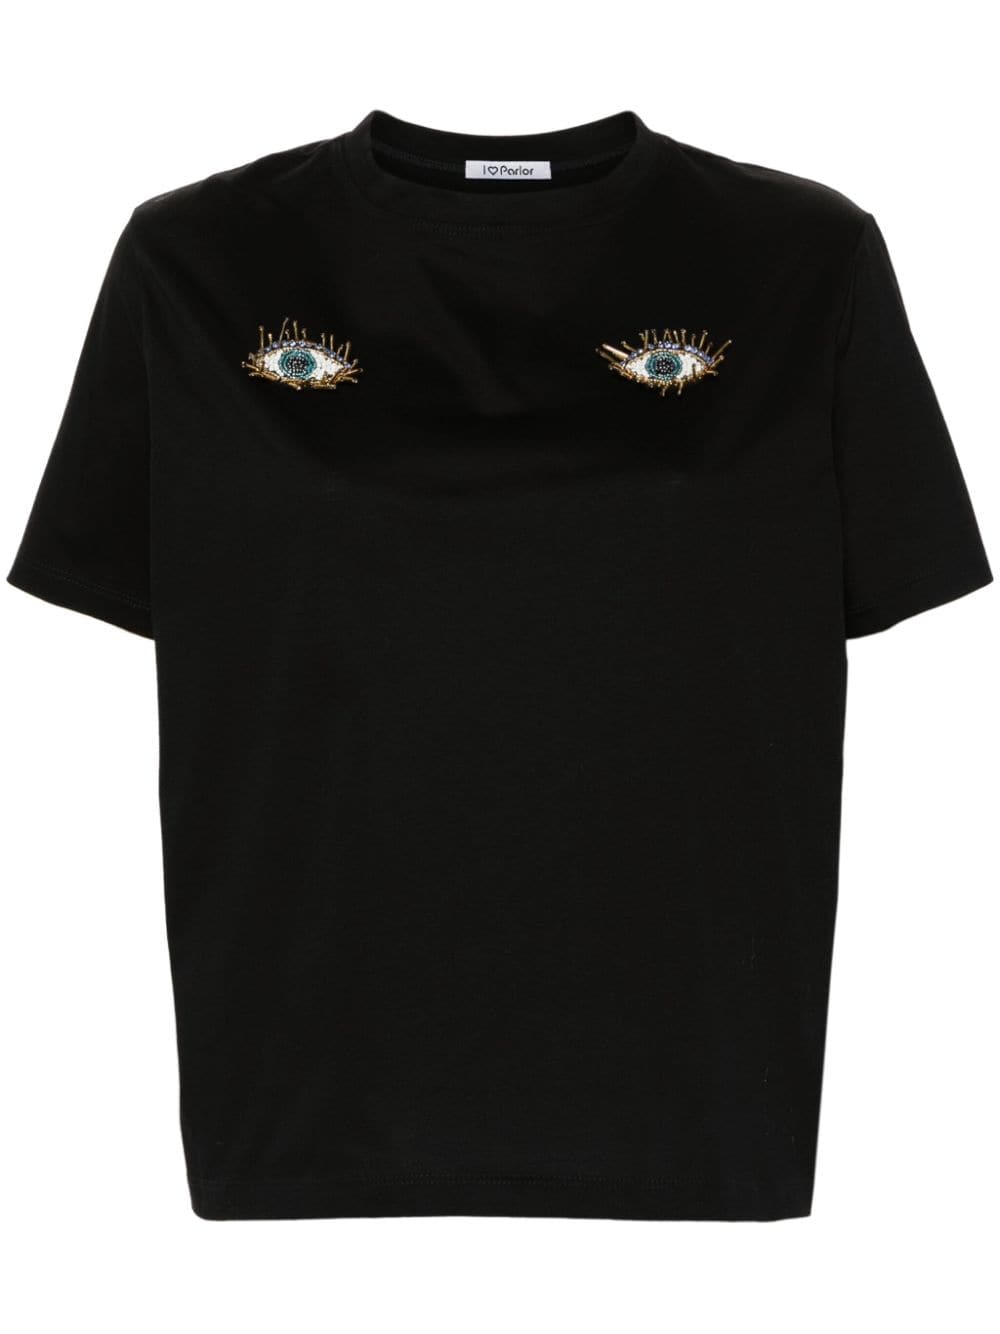 Parlor T-Shirt mit Augen-Patch - Schwarz von Parlor